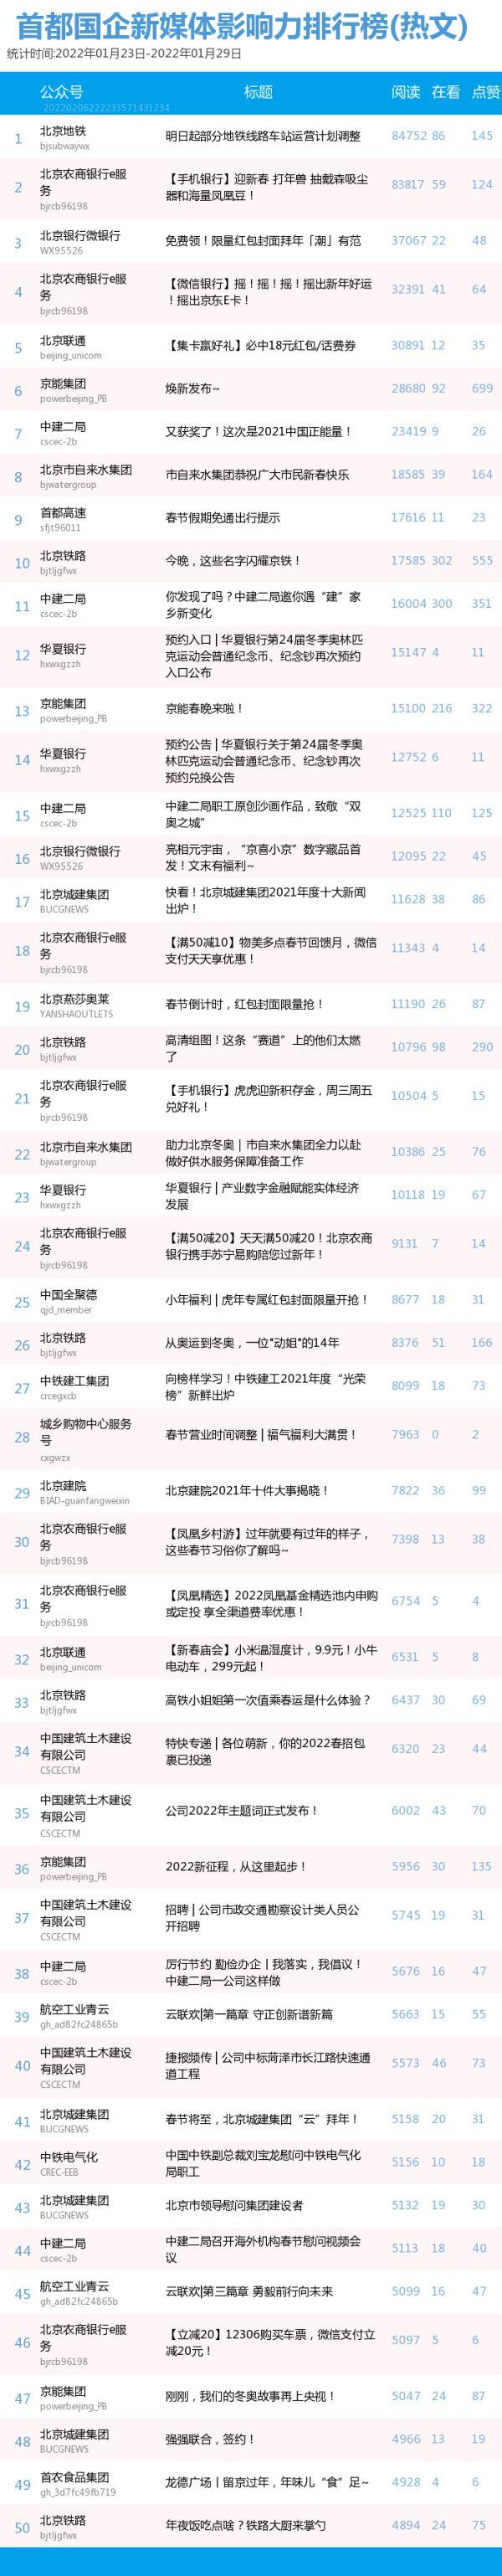 【北京国企新媒体影响力排行榜】1月榜及周榜（1.23-2.5）第289期